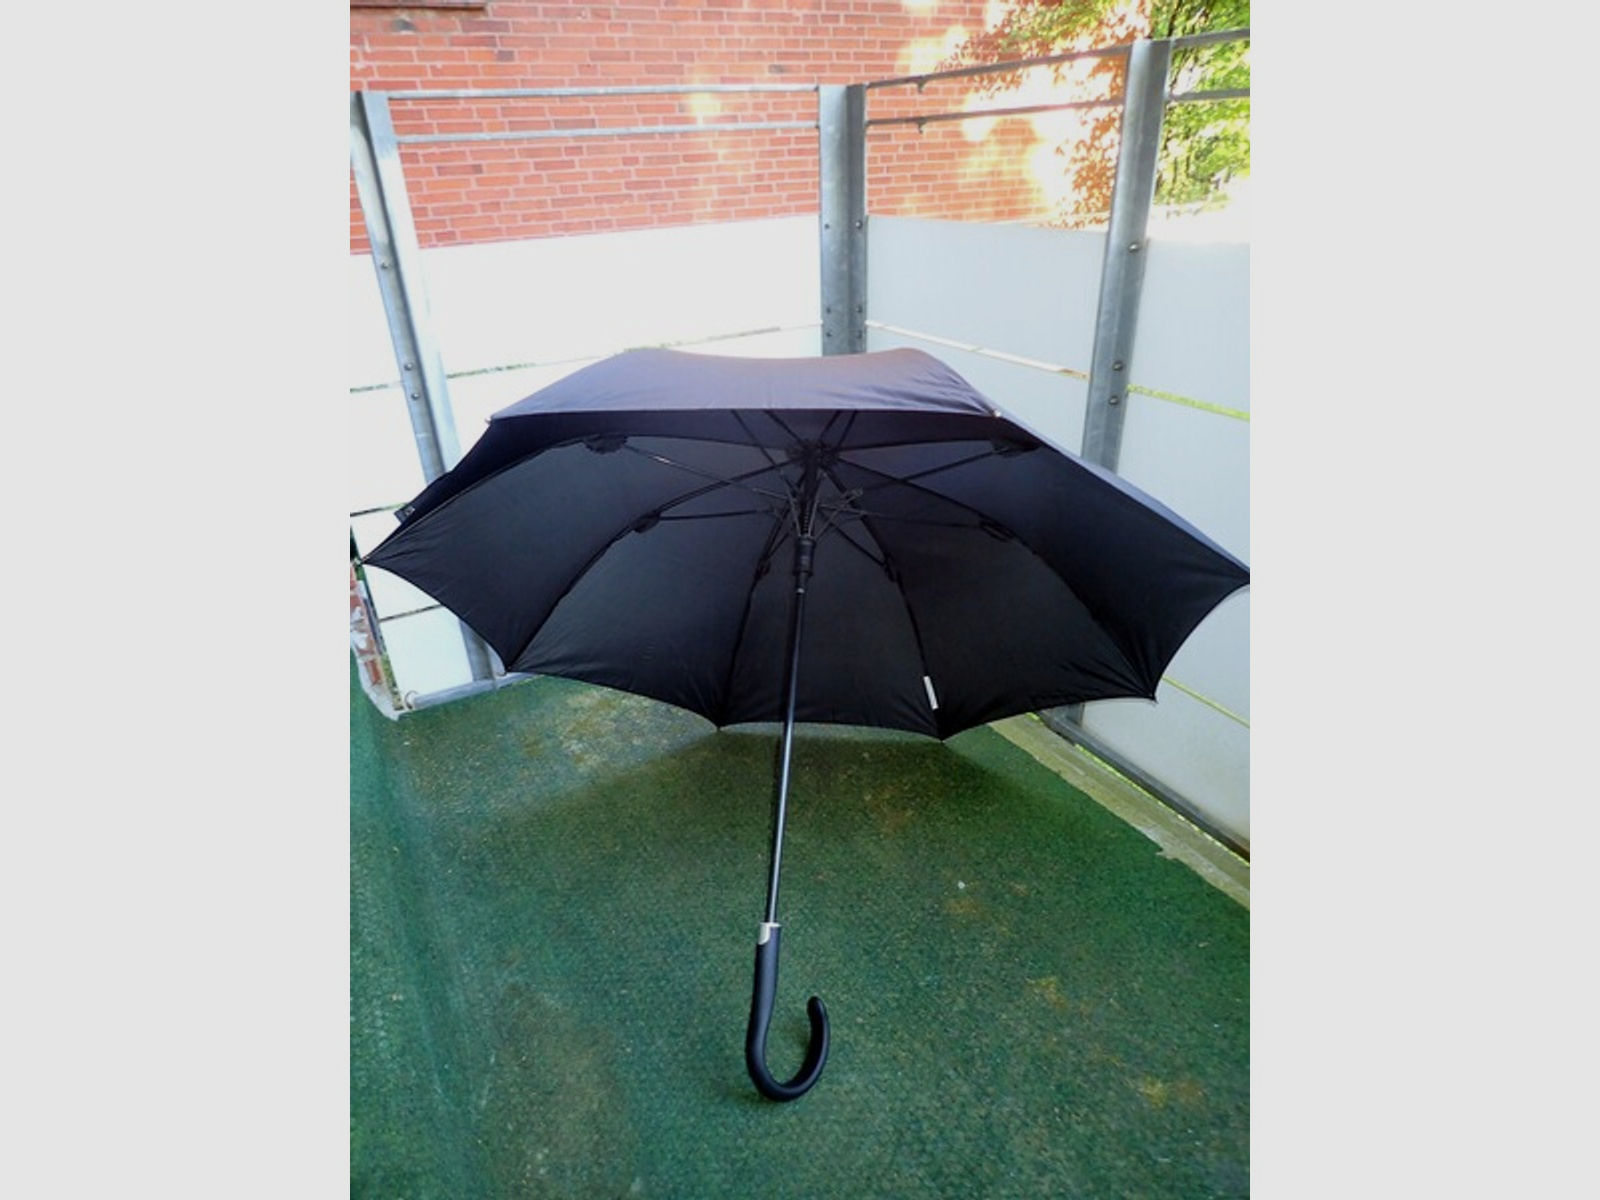 Selbstverteidigungsschirm/Regenschirm, schwarz, Damen, Rundhaken, neu!